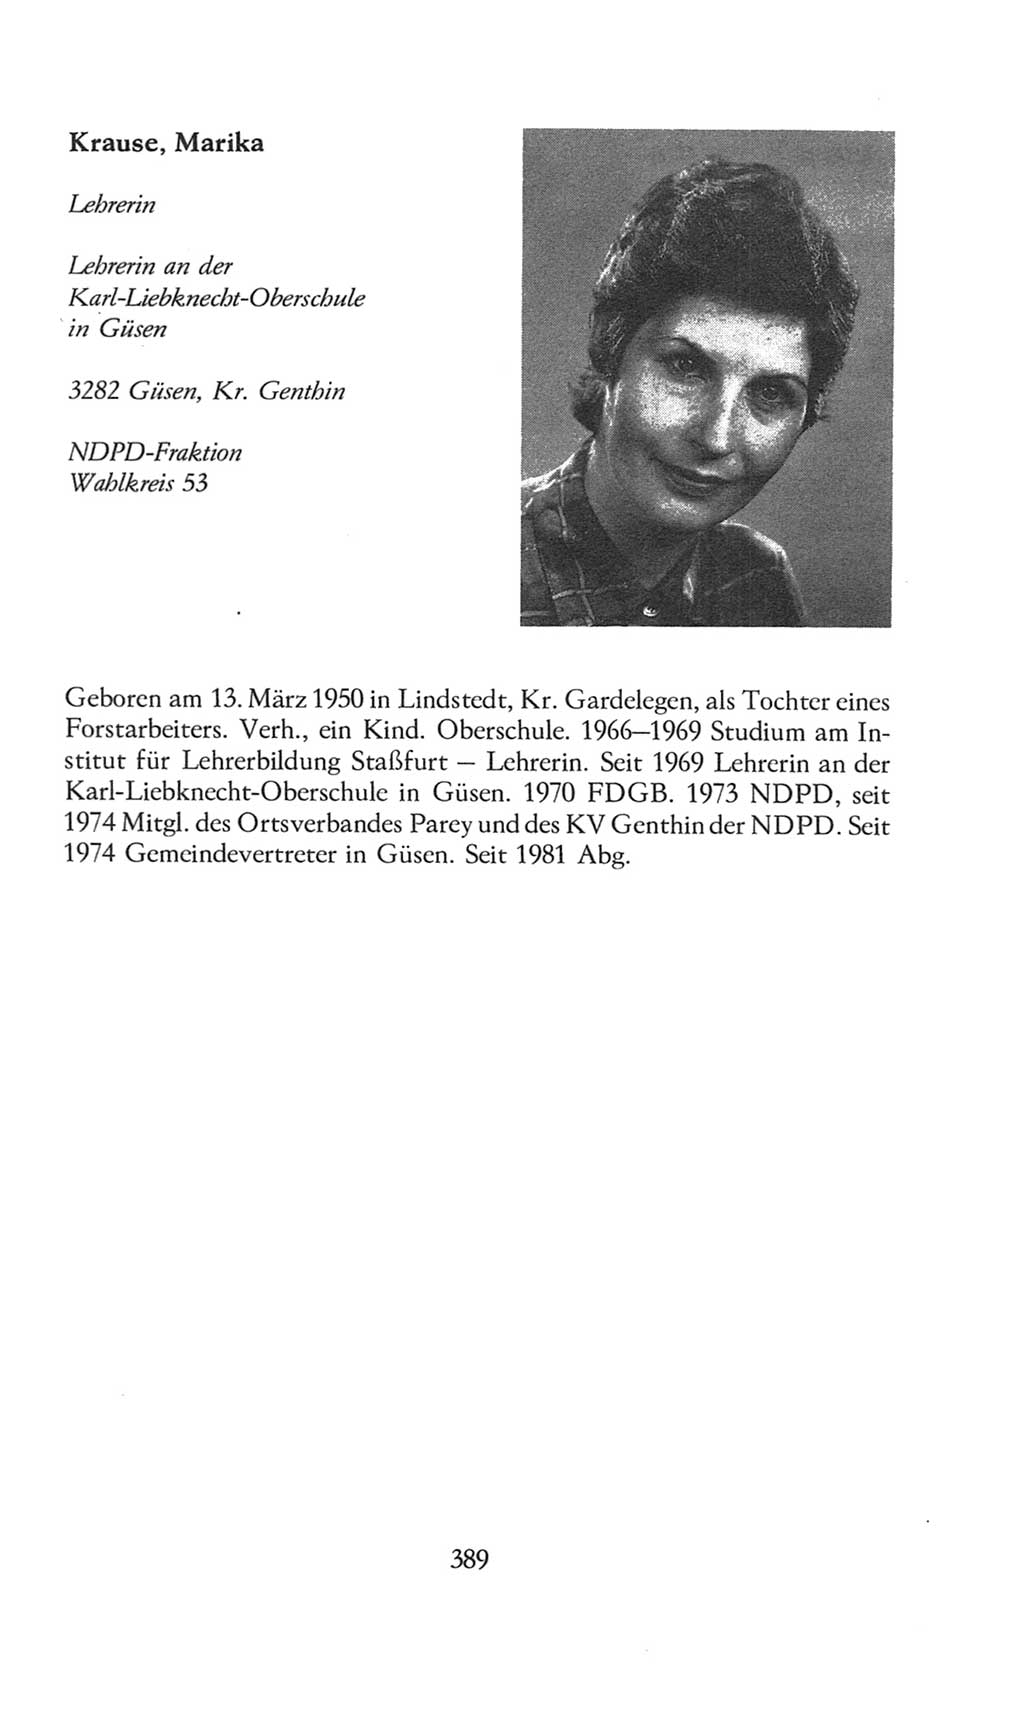 Volkskammer (VK) der Deutschen Demokratischen Republik (DDR), 8. Wahlperiode 1981-1986, Seite 389 (VK. DDR 8. WP. 1981-1986, S. 389)